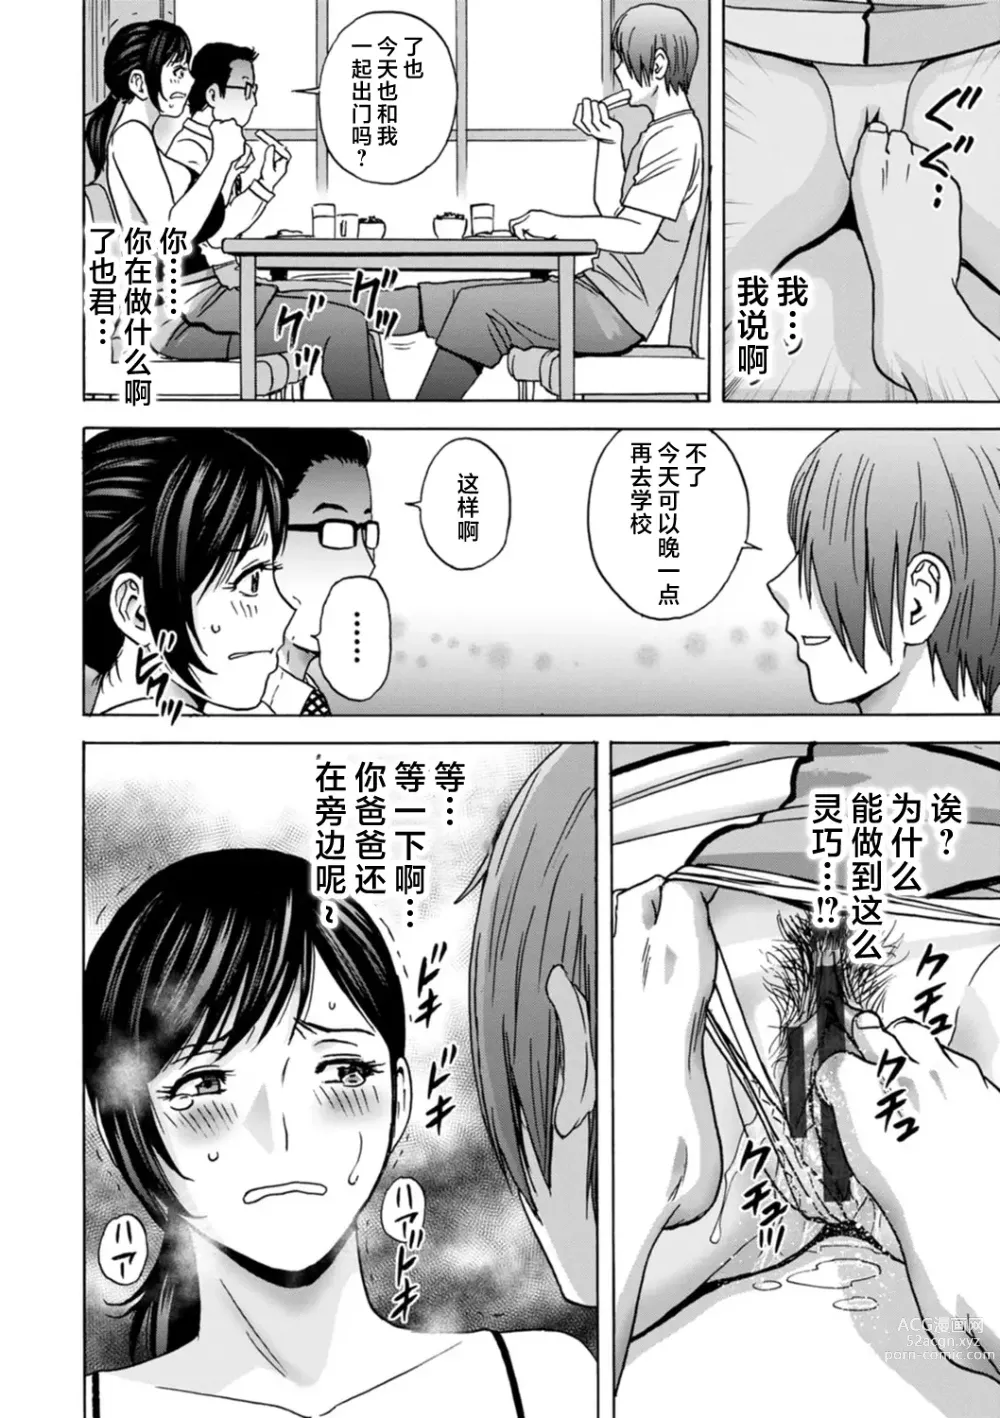 Page 24 of manga Girigiri no Onna-tachi